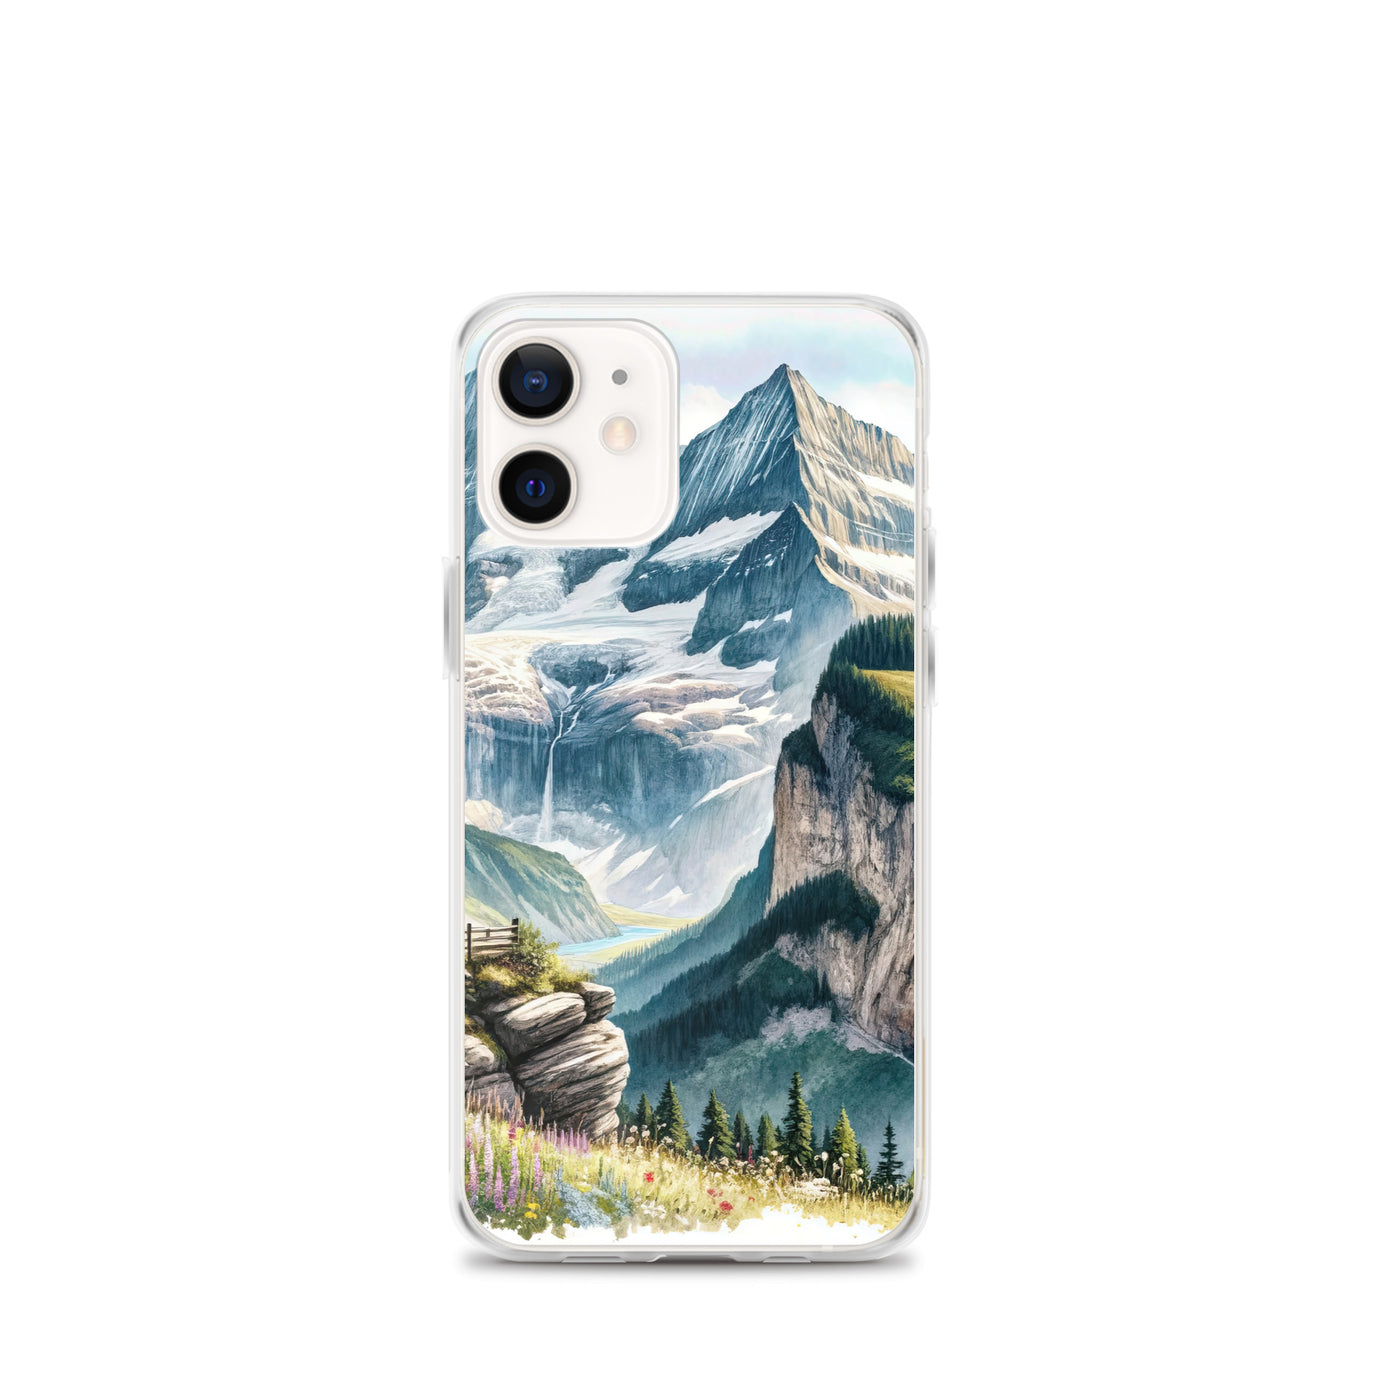 Aquarell-Panoramablick der Alpen mit schneebedeckten Gipfeln, Wasserfällen und Wanderern - iPhone Schutzhülle (durchsichtig) wandern xxx yyy zzz iPhone 12 mini